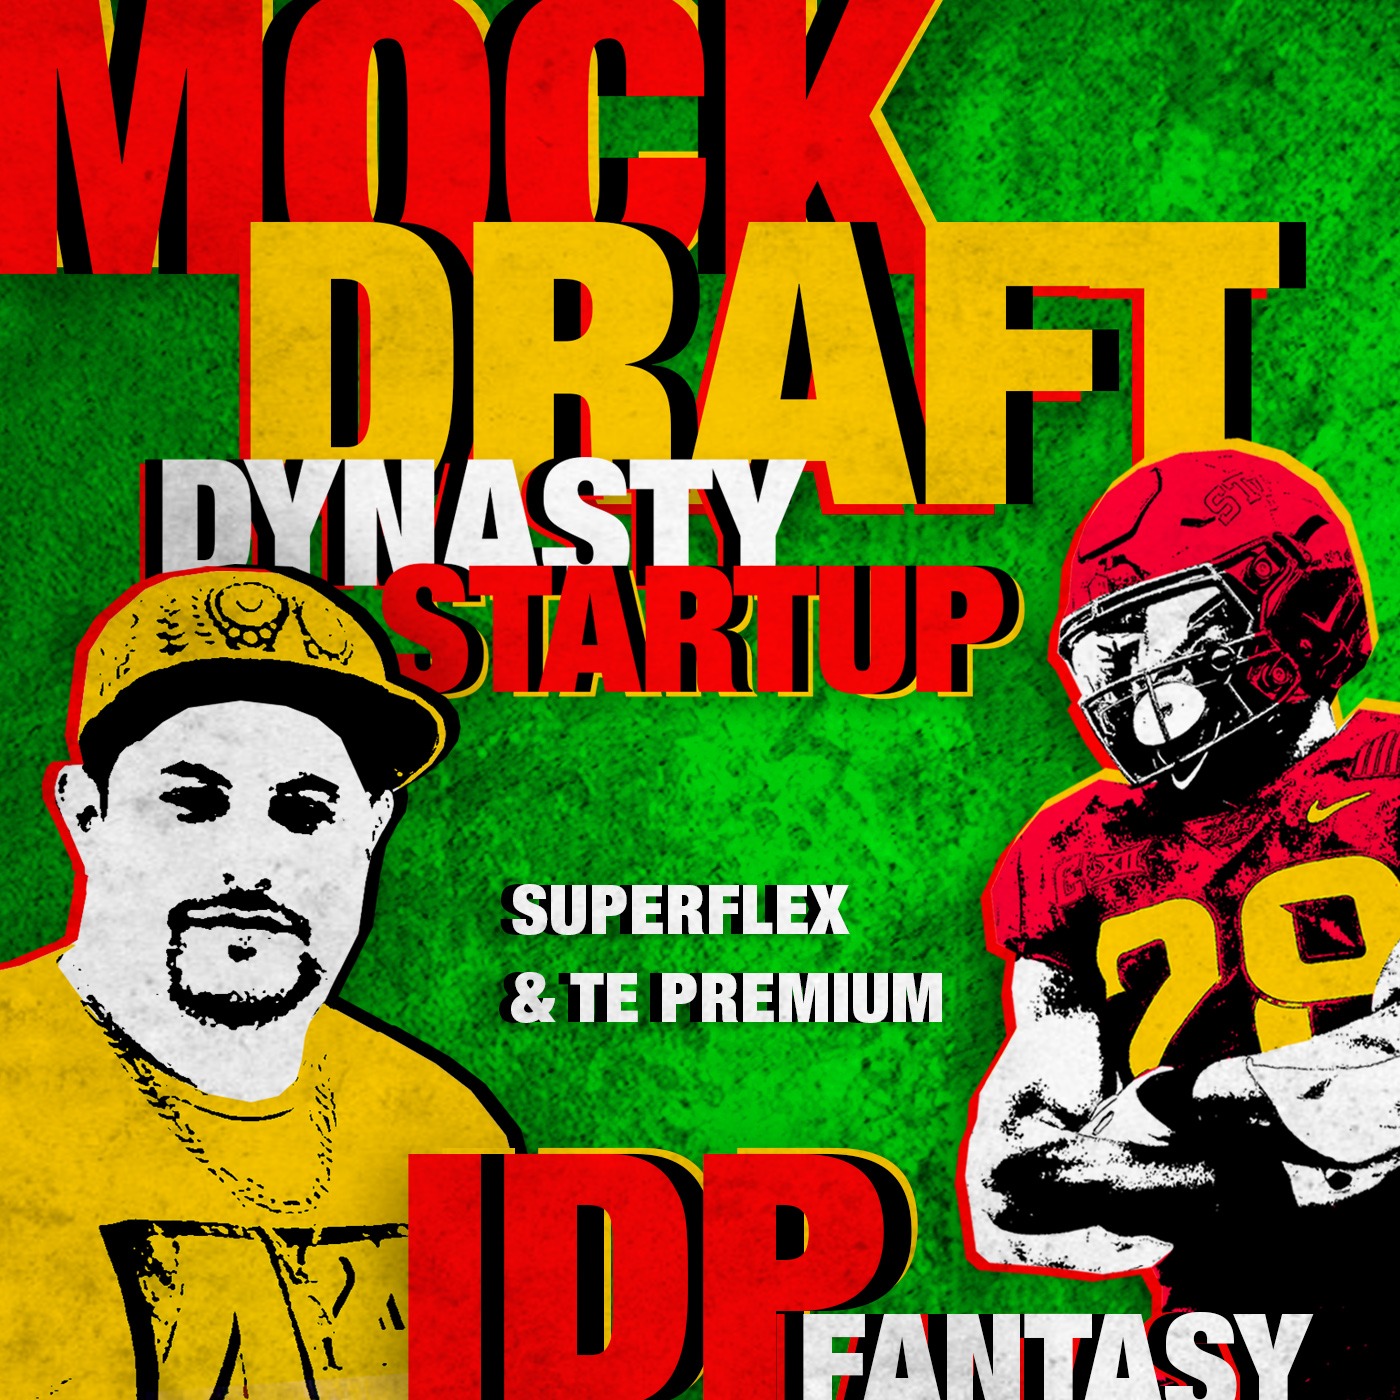 Live Dynasty Startup Mock Draft 12 team PPR Superflex Image